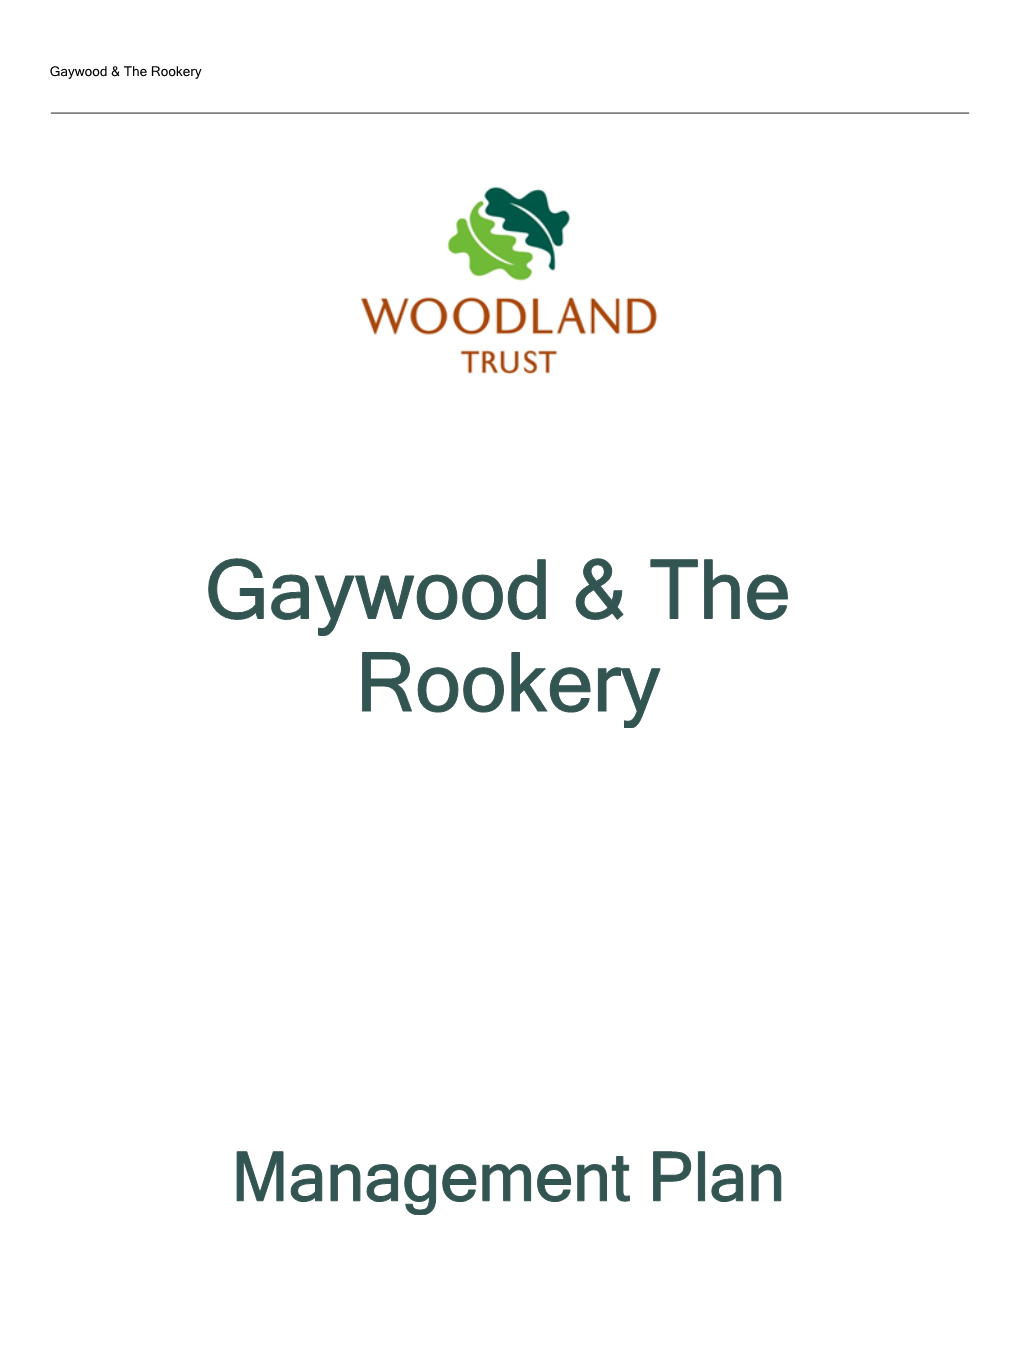 Gaywood & the Rookery